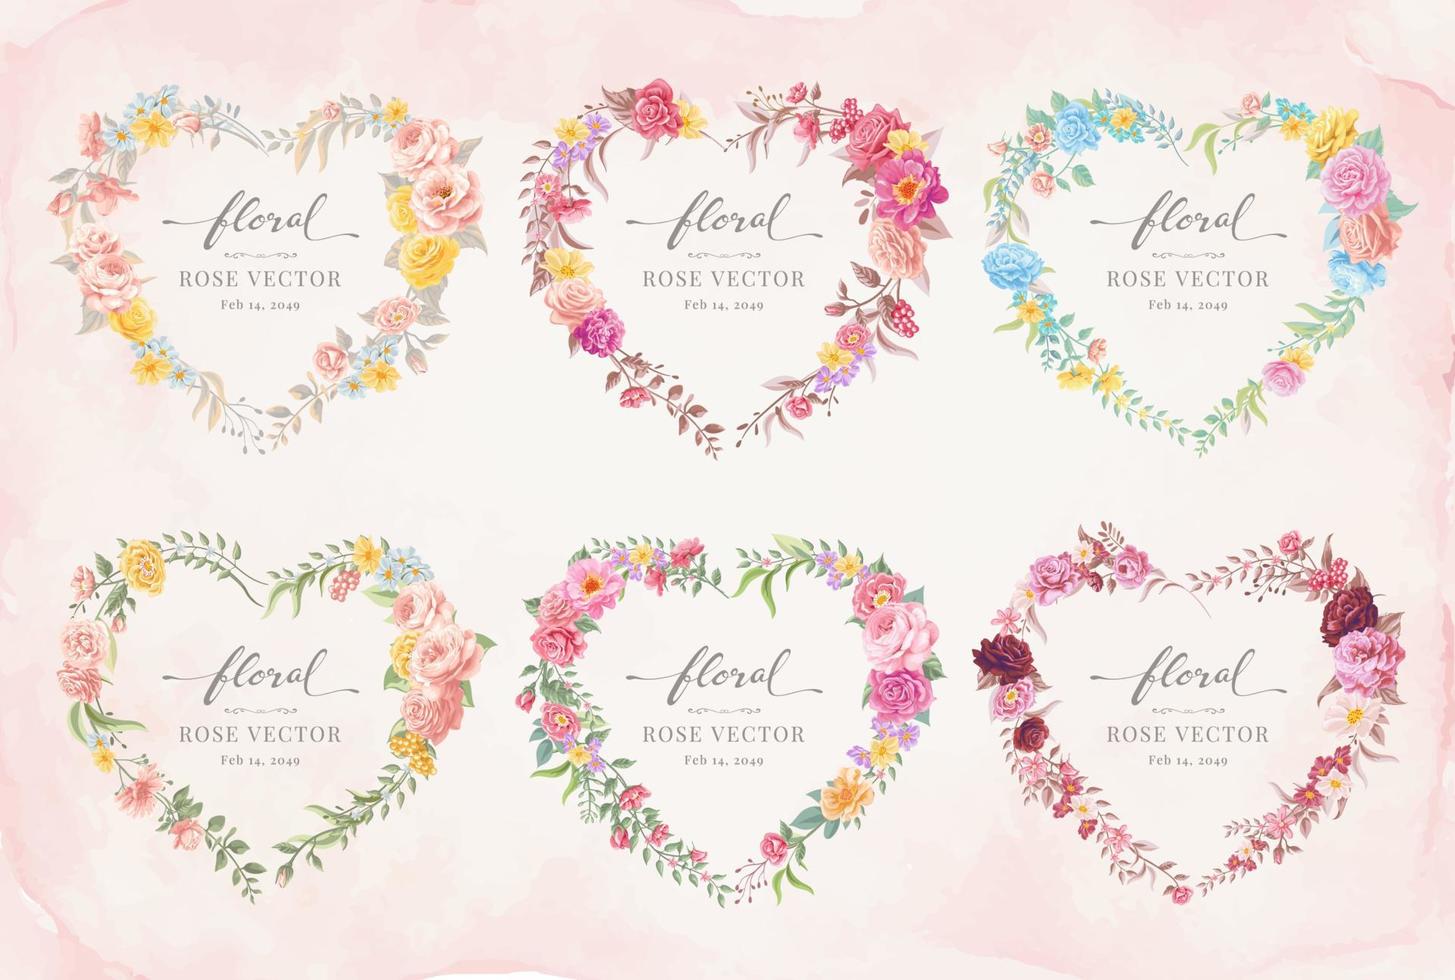 collectie set label hartvorm mooie roos bloem en botanisch blad digitaal geschilderde illustratie voor liefde bruiloft valentijnsdag of arrangement uitnodiging ontwerp wenskaart vector